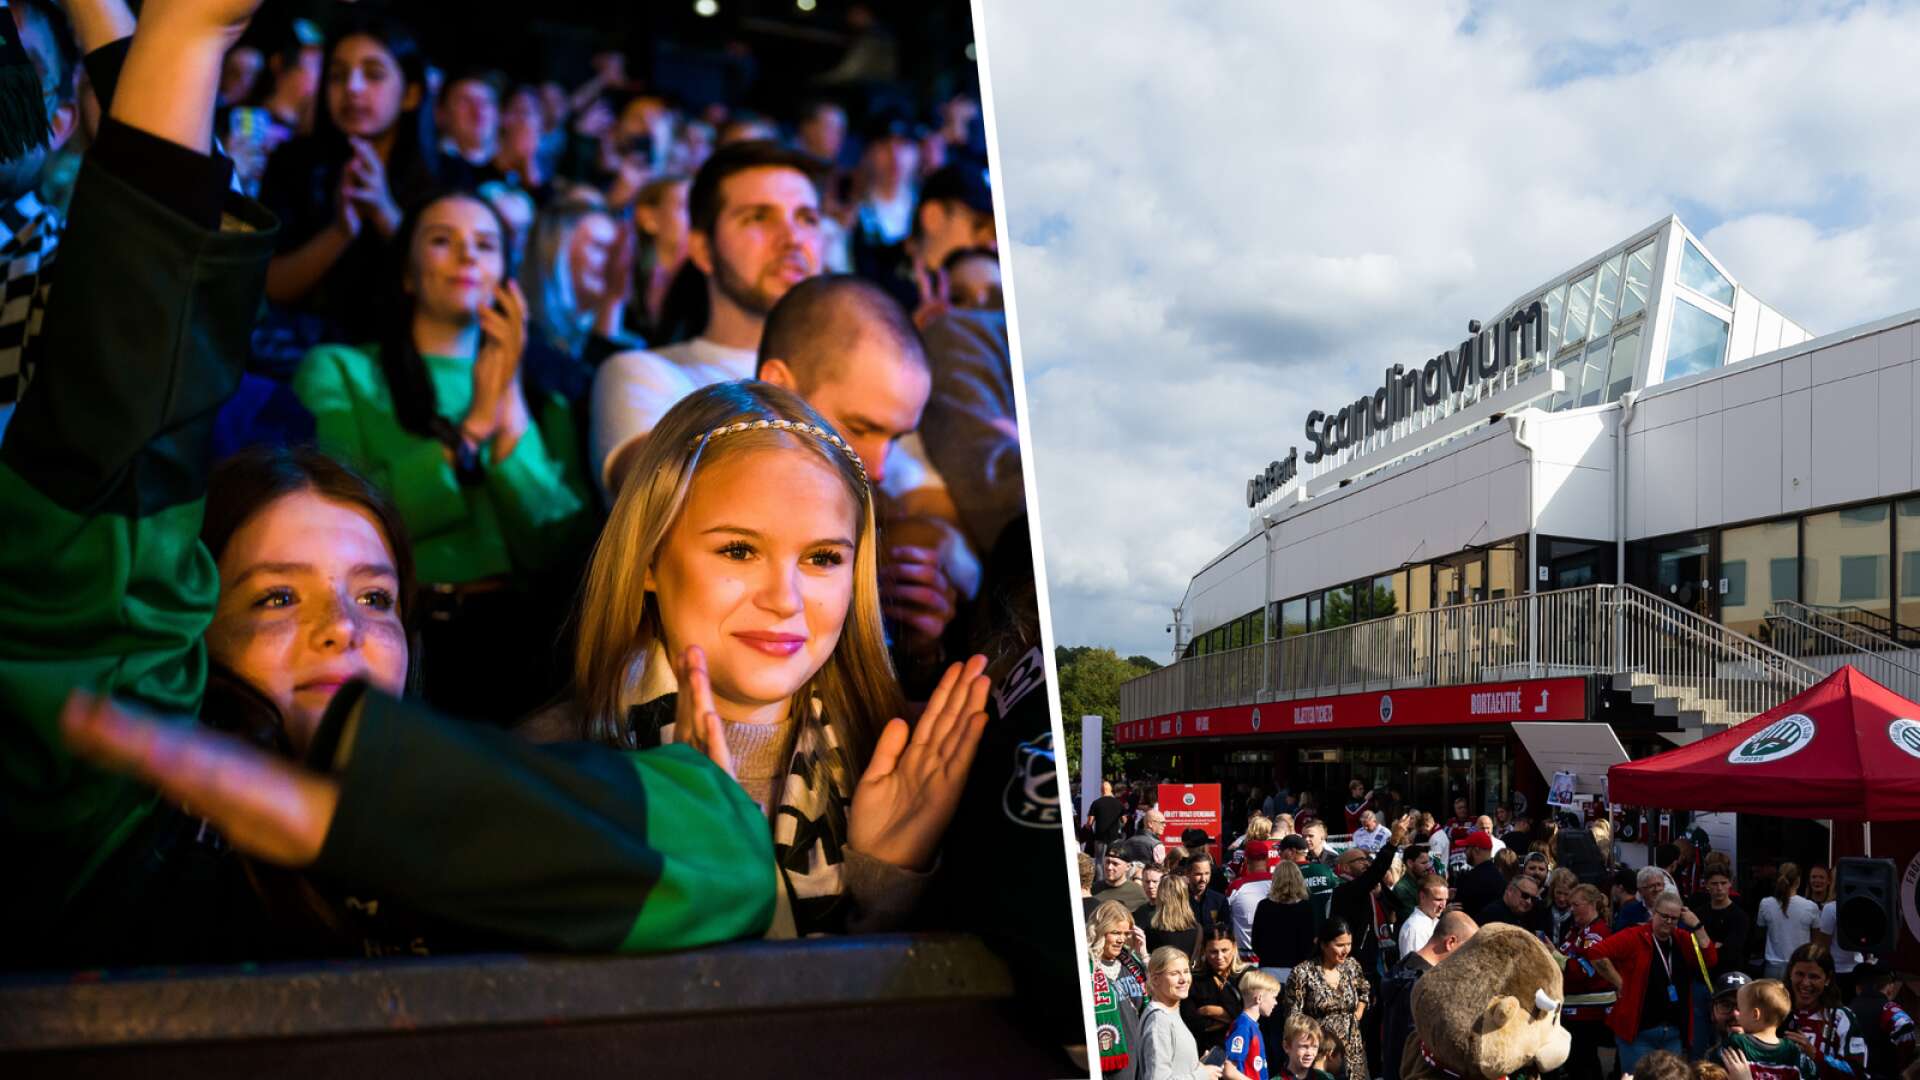 ✓ Eget barområde på Svenska Mässan ✓ Så många biljetter har FBK-fansen ✓ Centerns hyllning